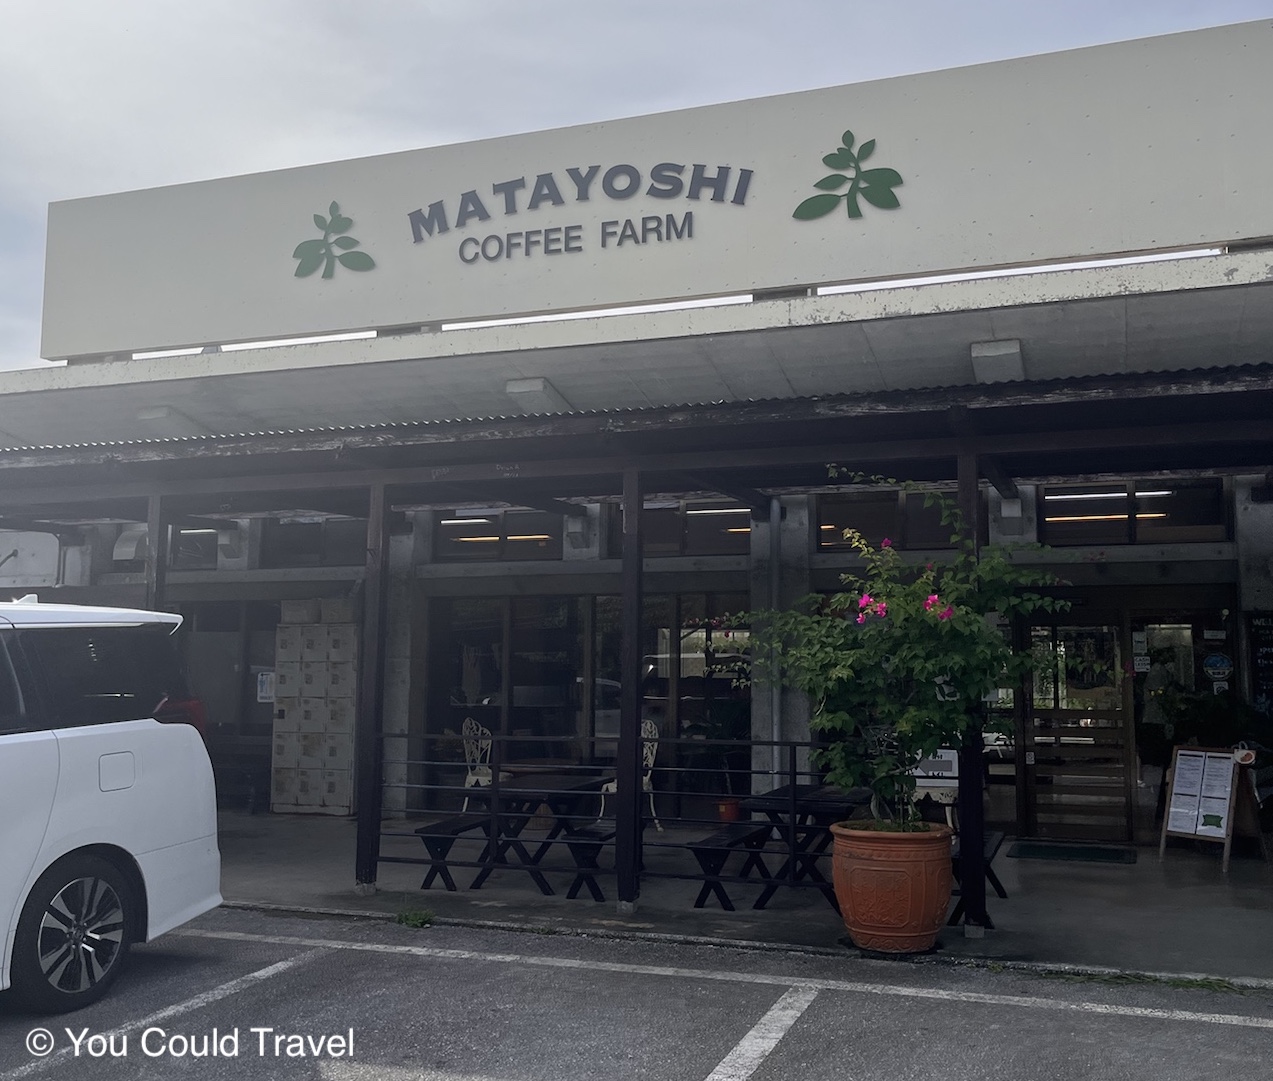 Matayoshi coffee farm in Okinawa